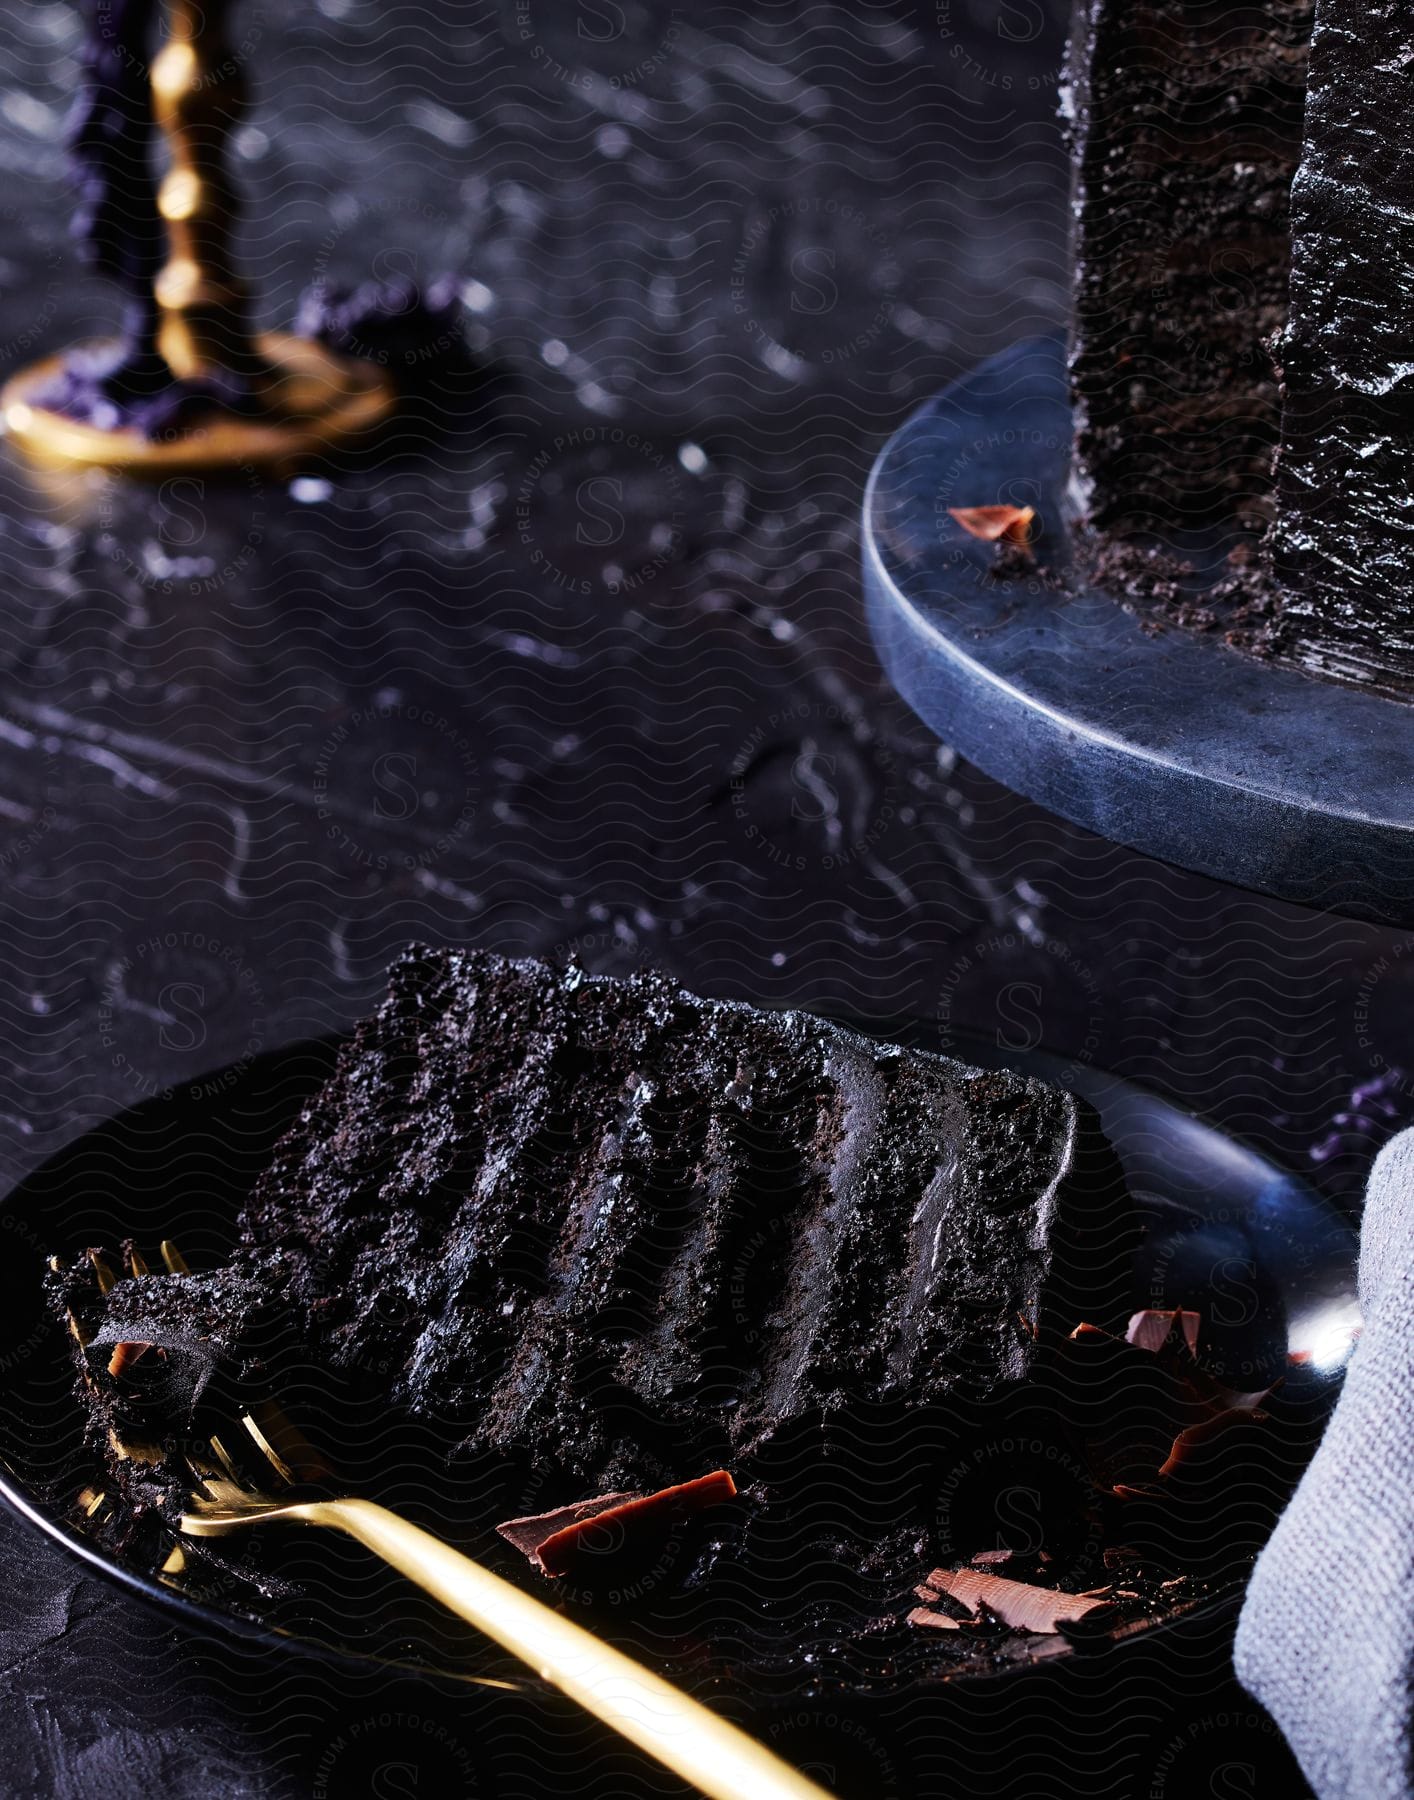 A chocolate cake on a black plate